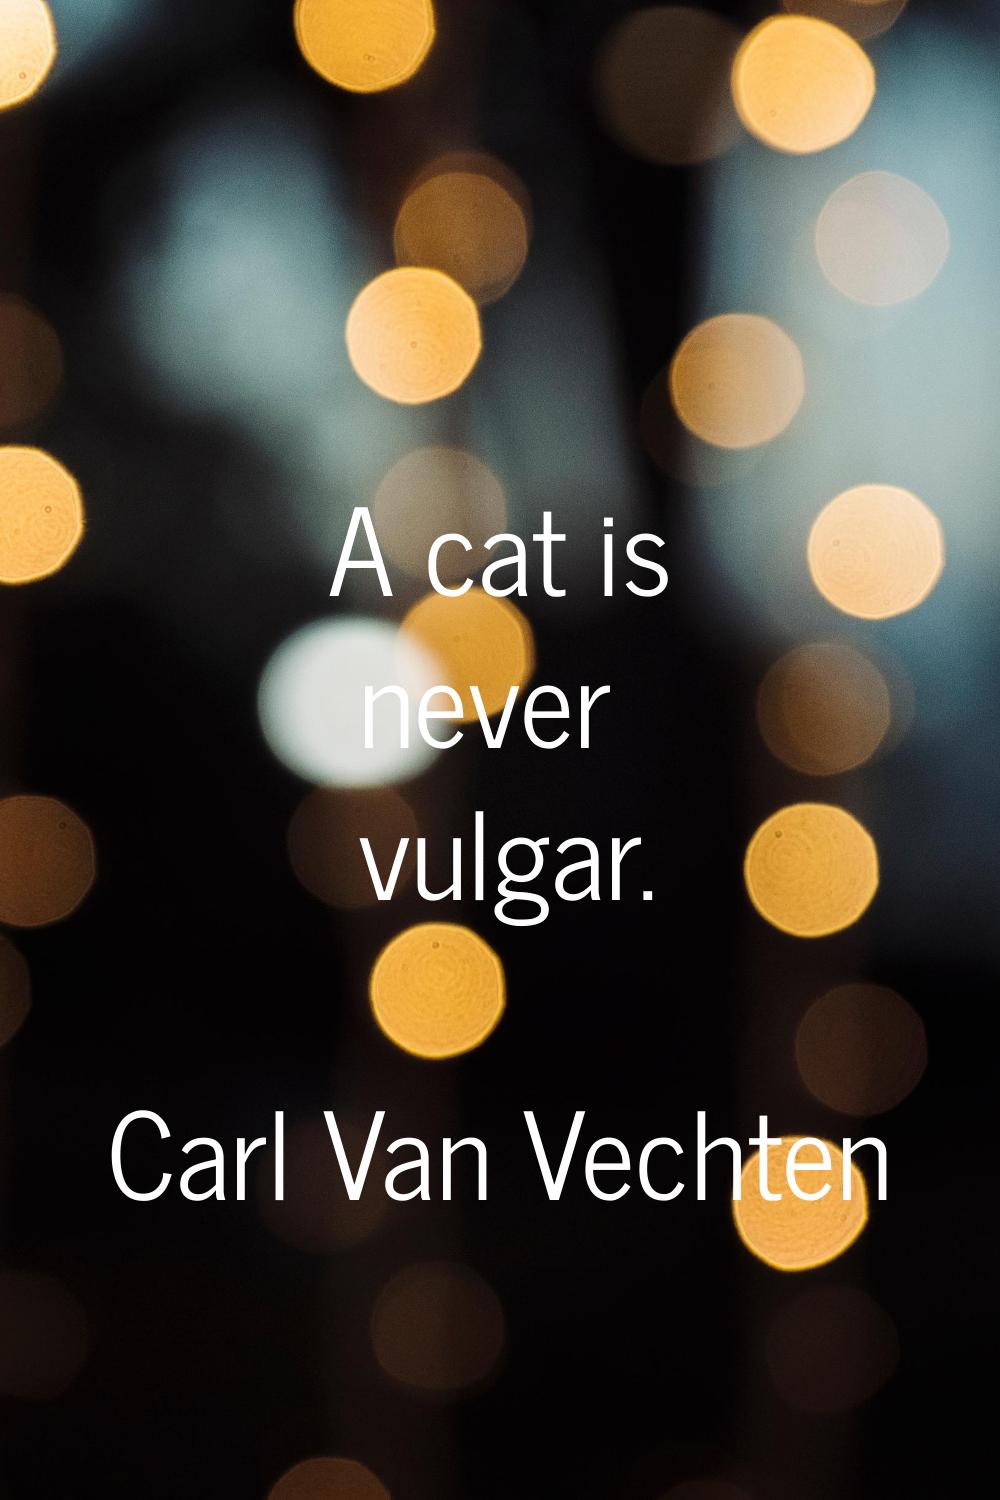 A cat is never vulgar.